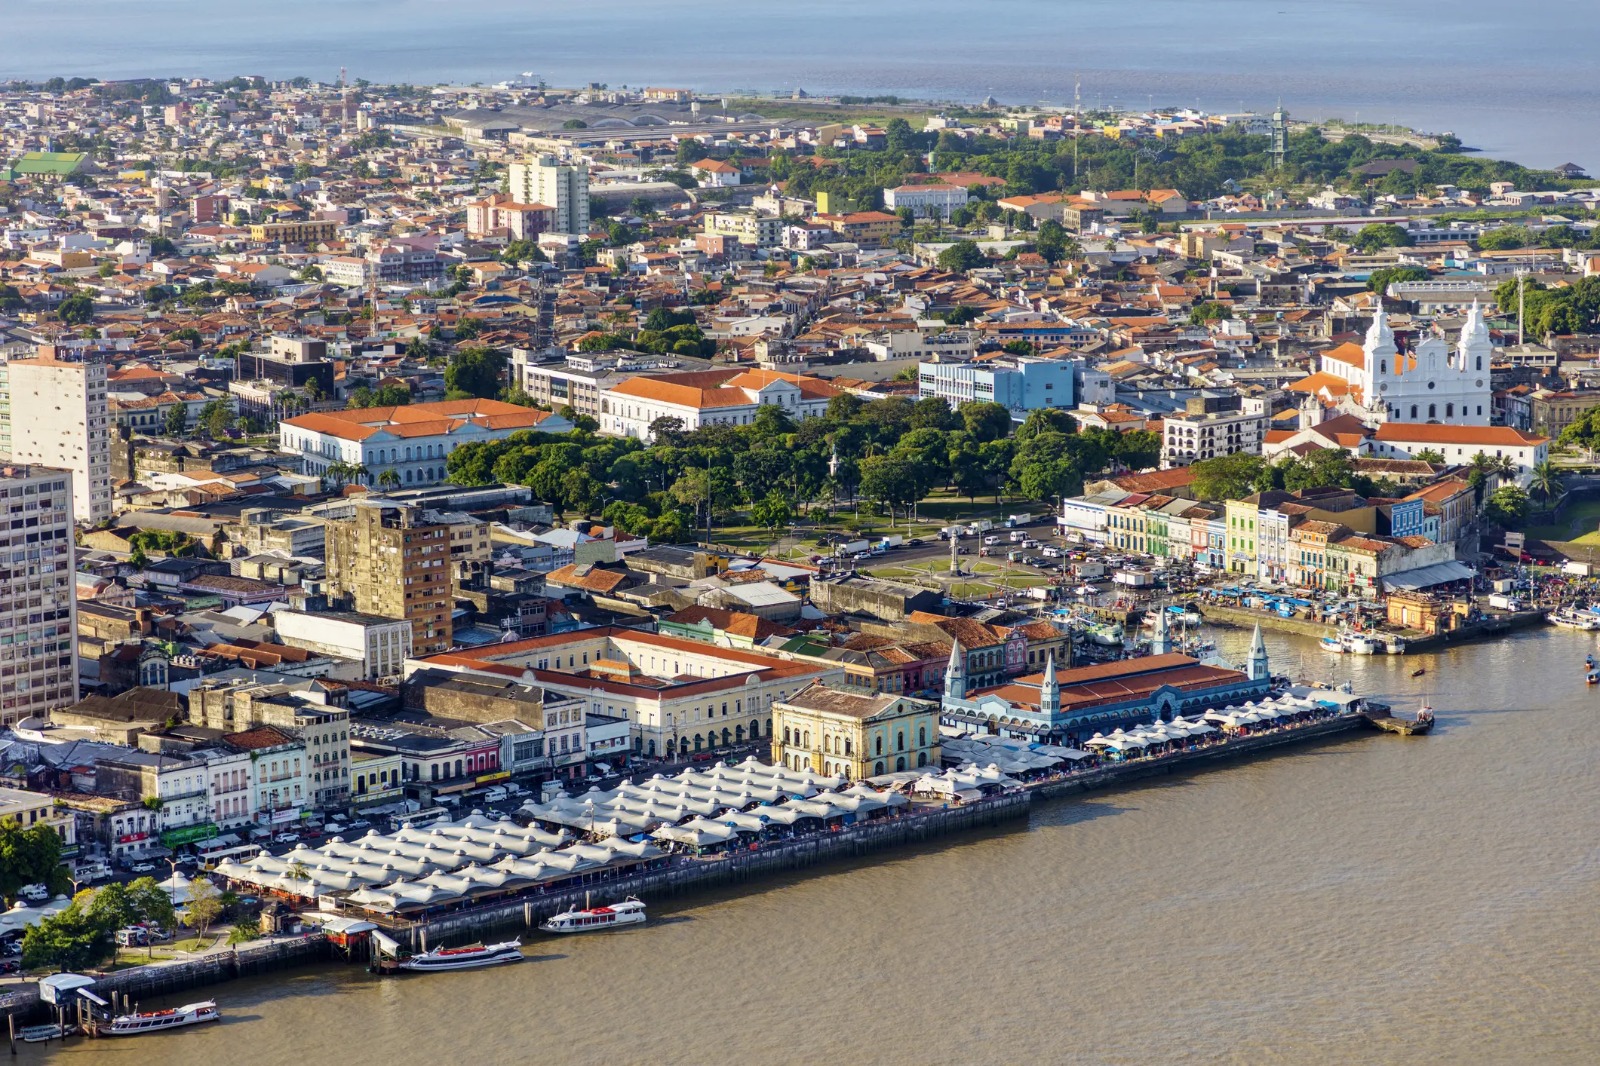 Vista aérea da cidade de Belém, capital do Pará (Foto: REprodução/internet)